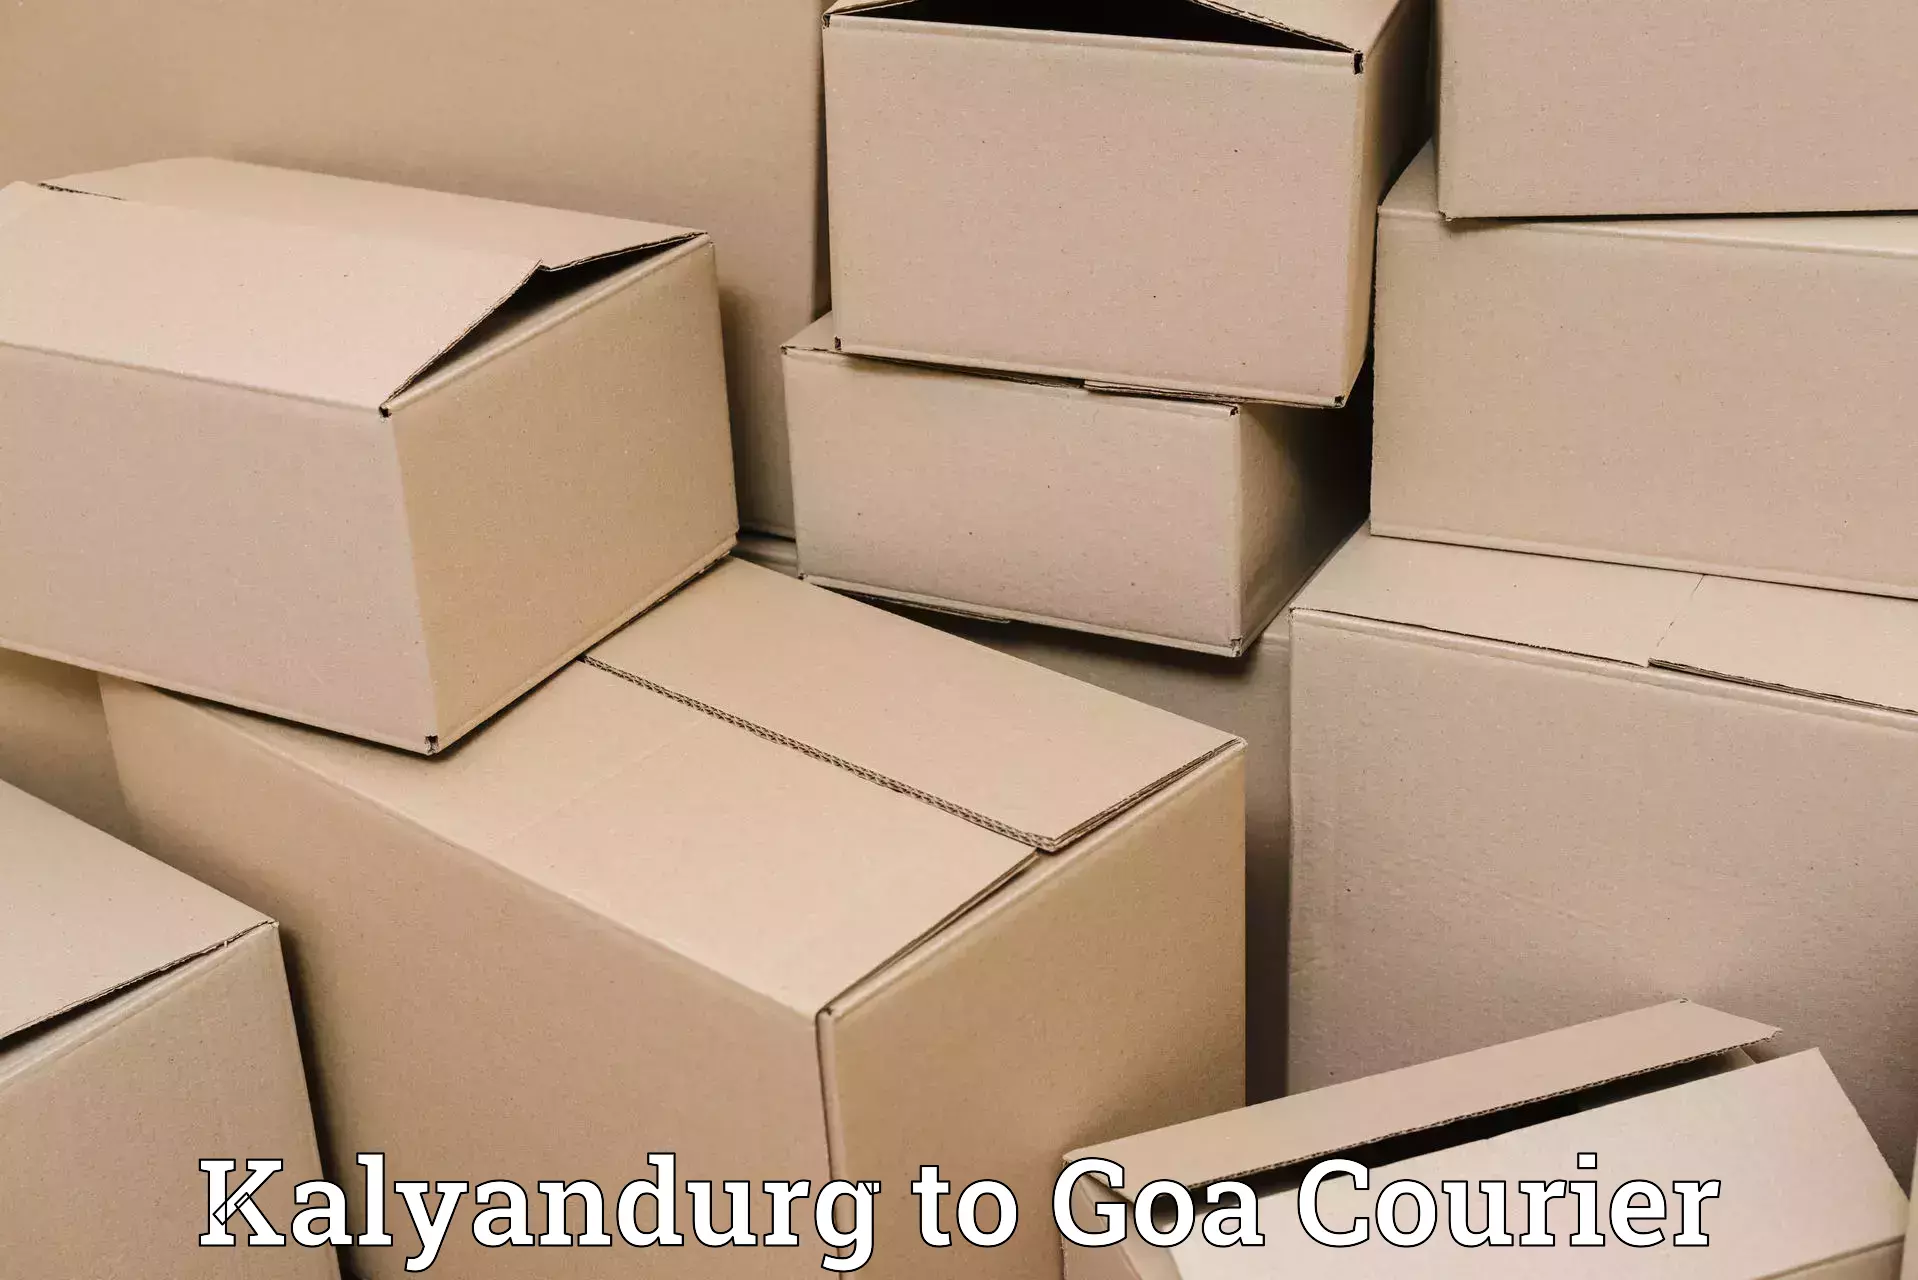 Optimized shipping routes Kalyandurg to Ponda